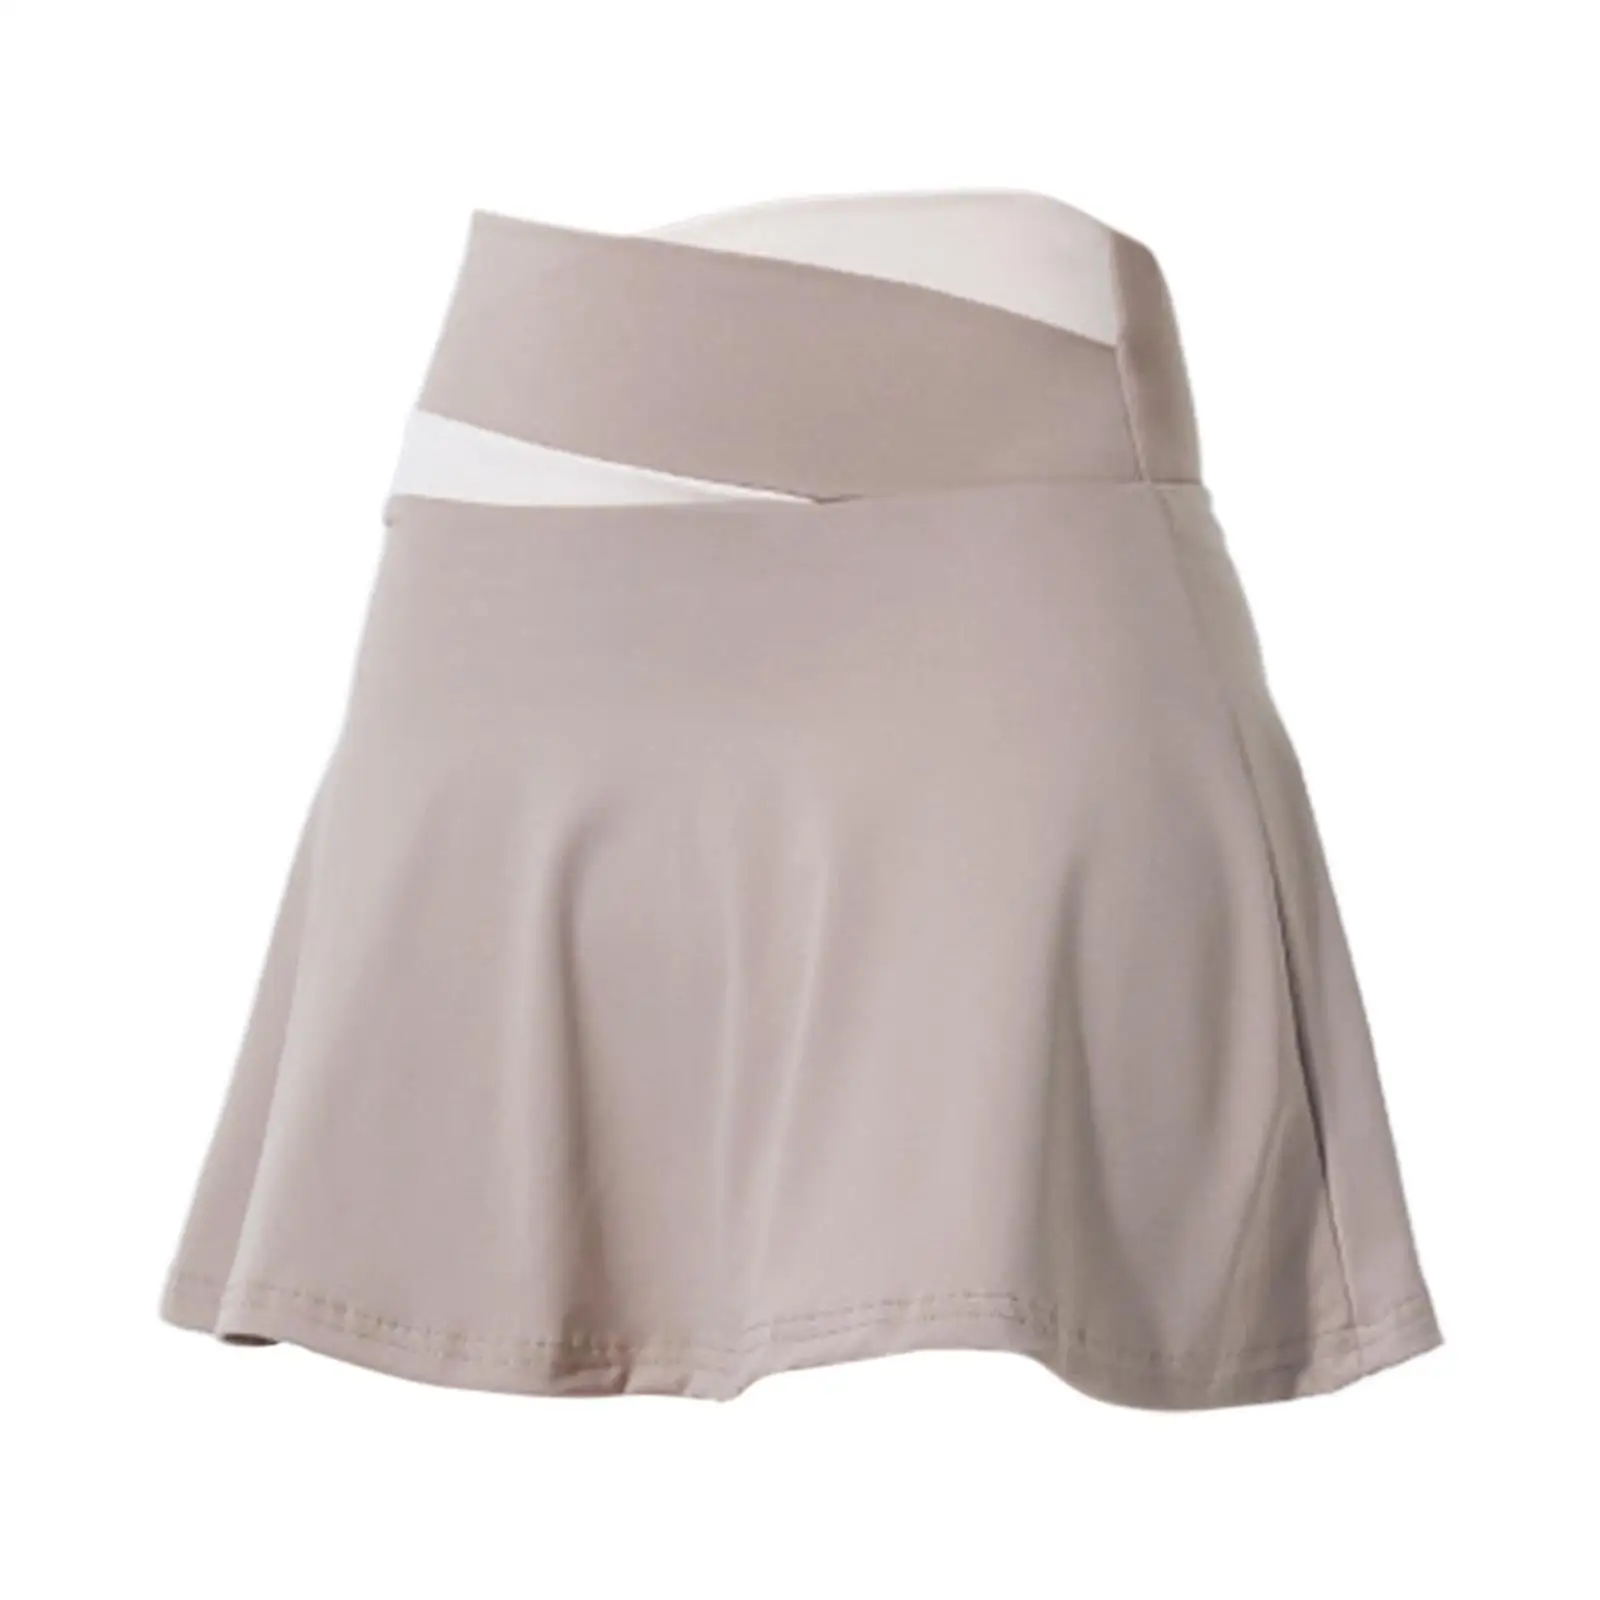 Tennis Skirt Short Skirt Anti Exposure Soft Lightweight High Waisted Cute Womens Skirt for Summer Beach Exercise Gym Sport